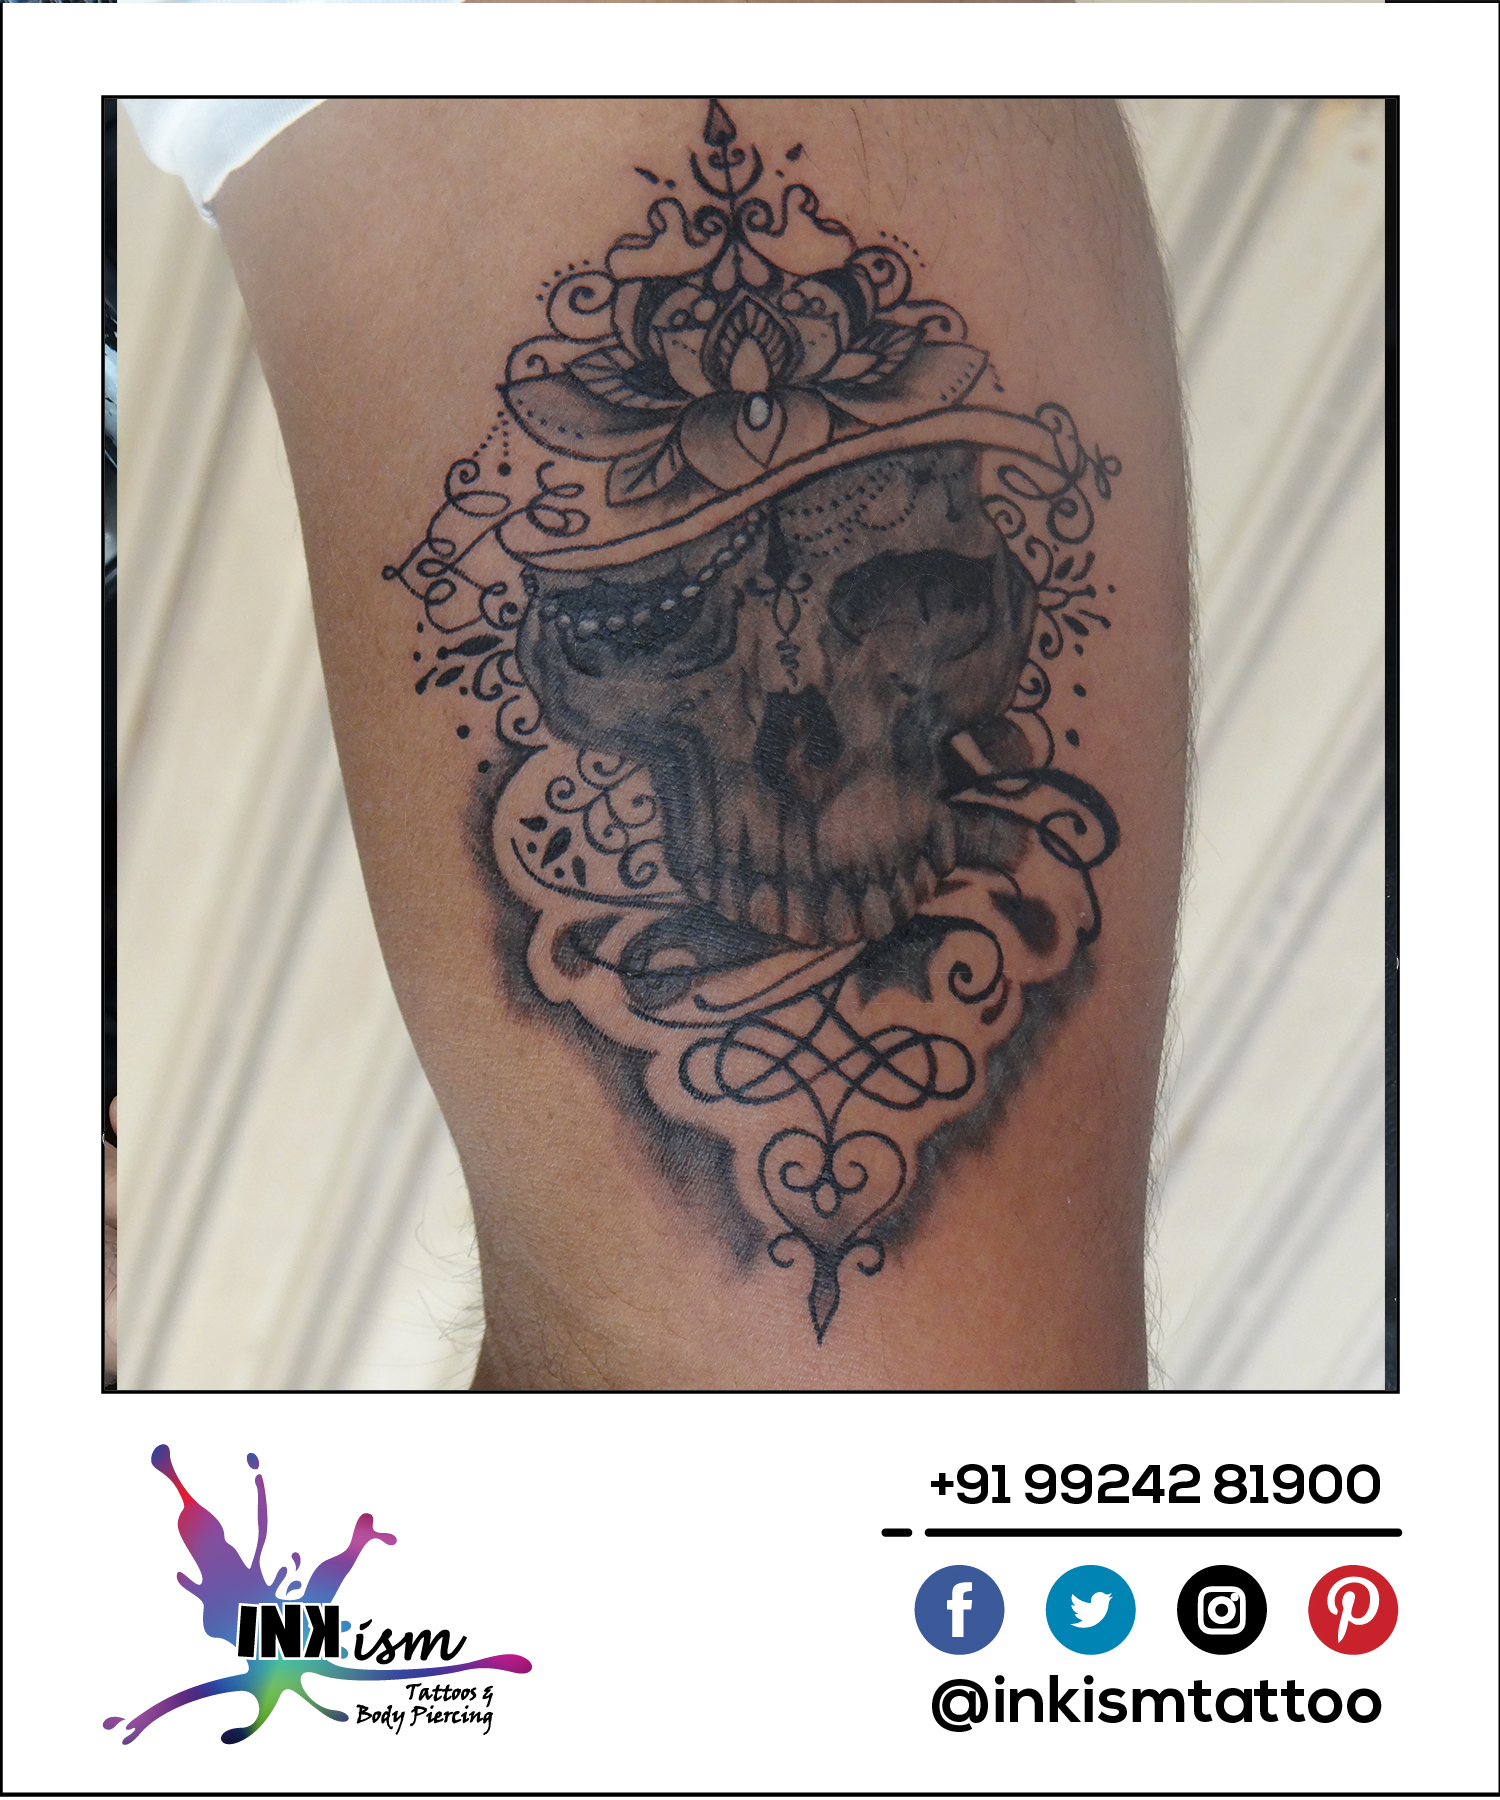 Grey wash tattoo, Skull tattoo, Lotus tattoo, Swirls Tattoo, Inkism tattoo and body piercing rajkot gujarat